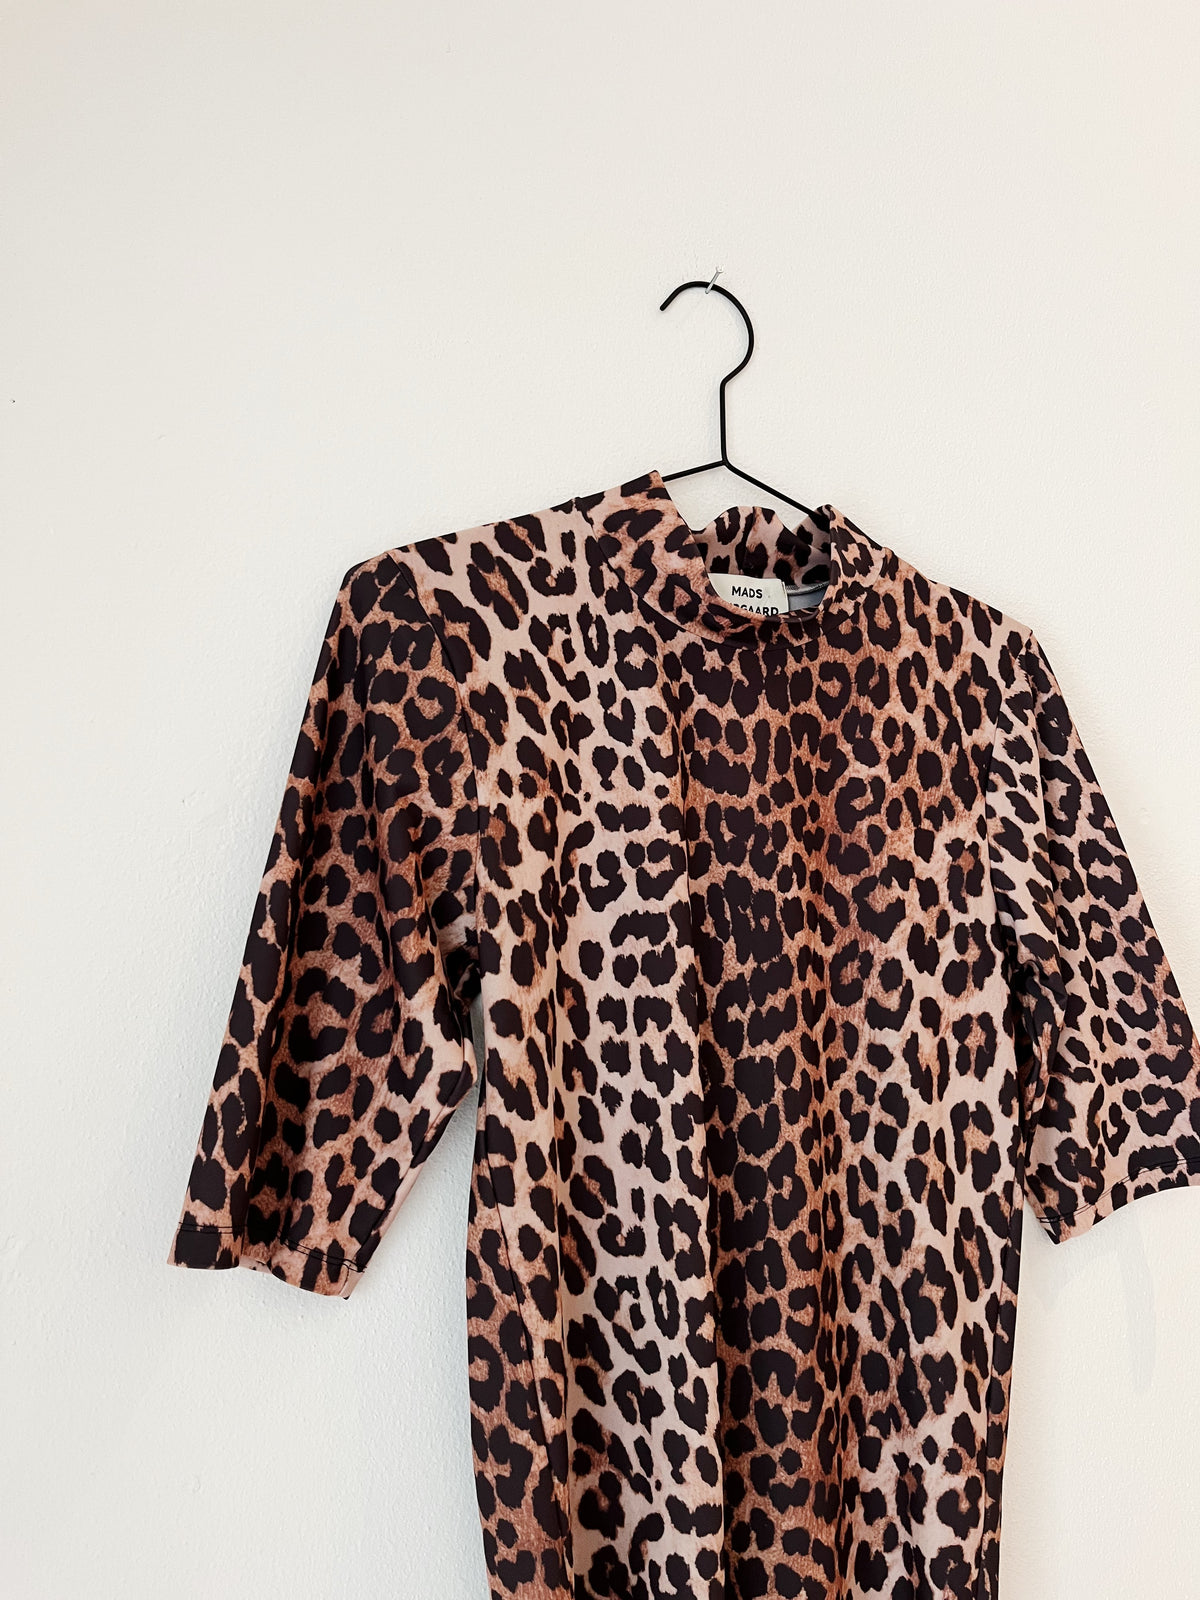 Mads Nørgaard leopard t-shirt